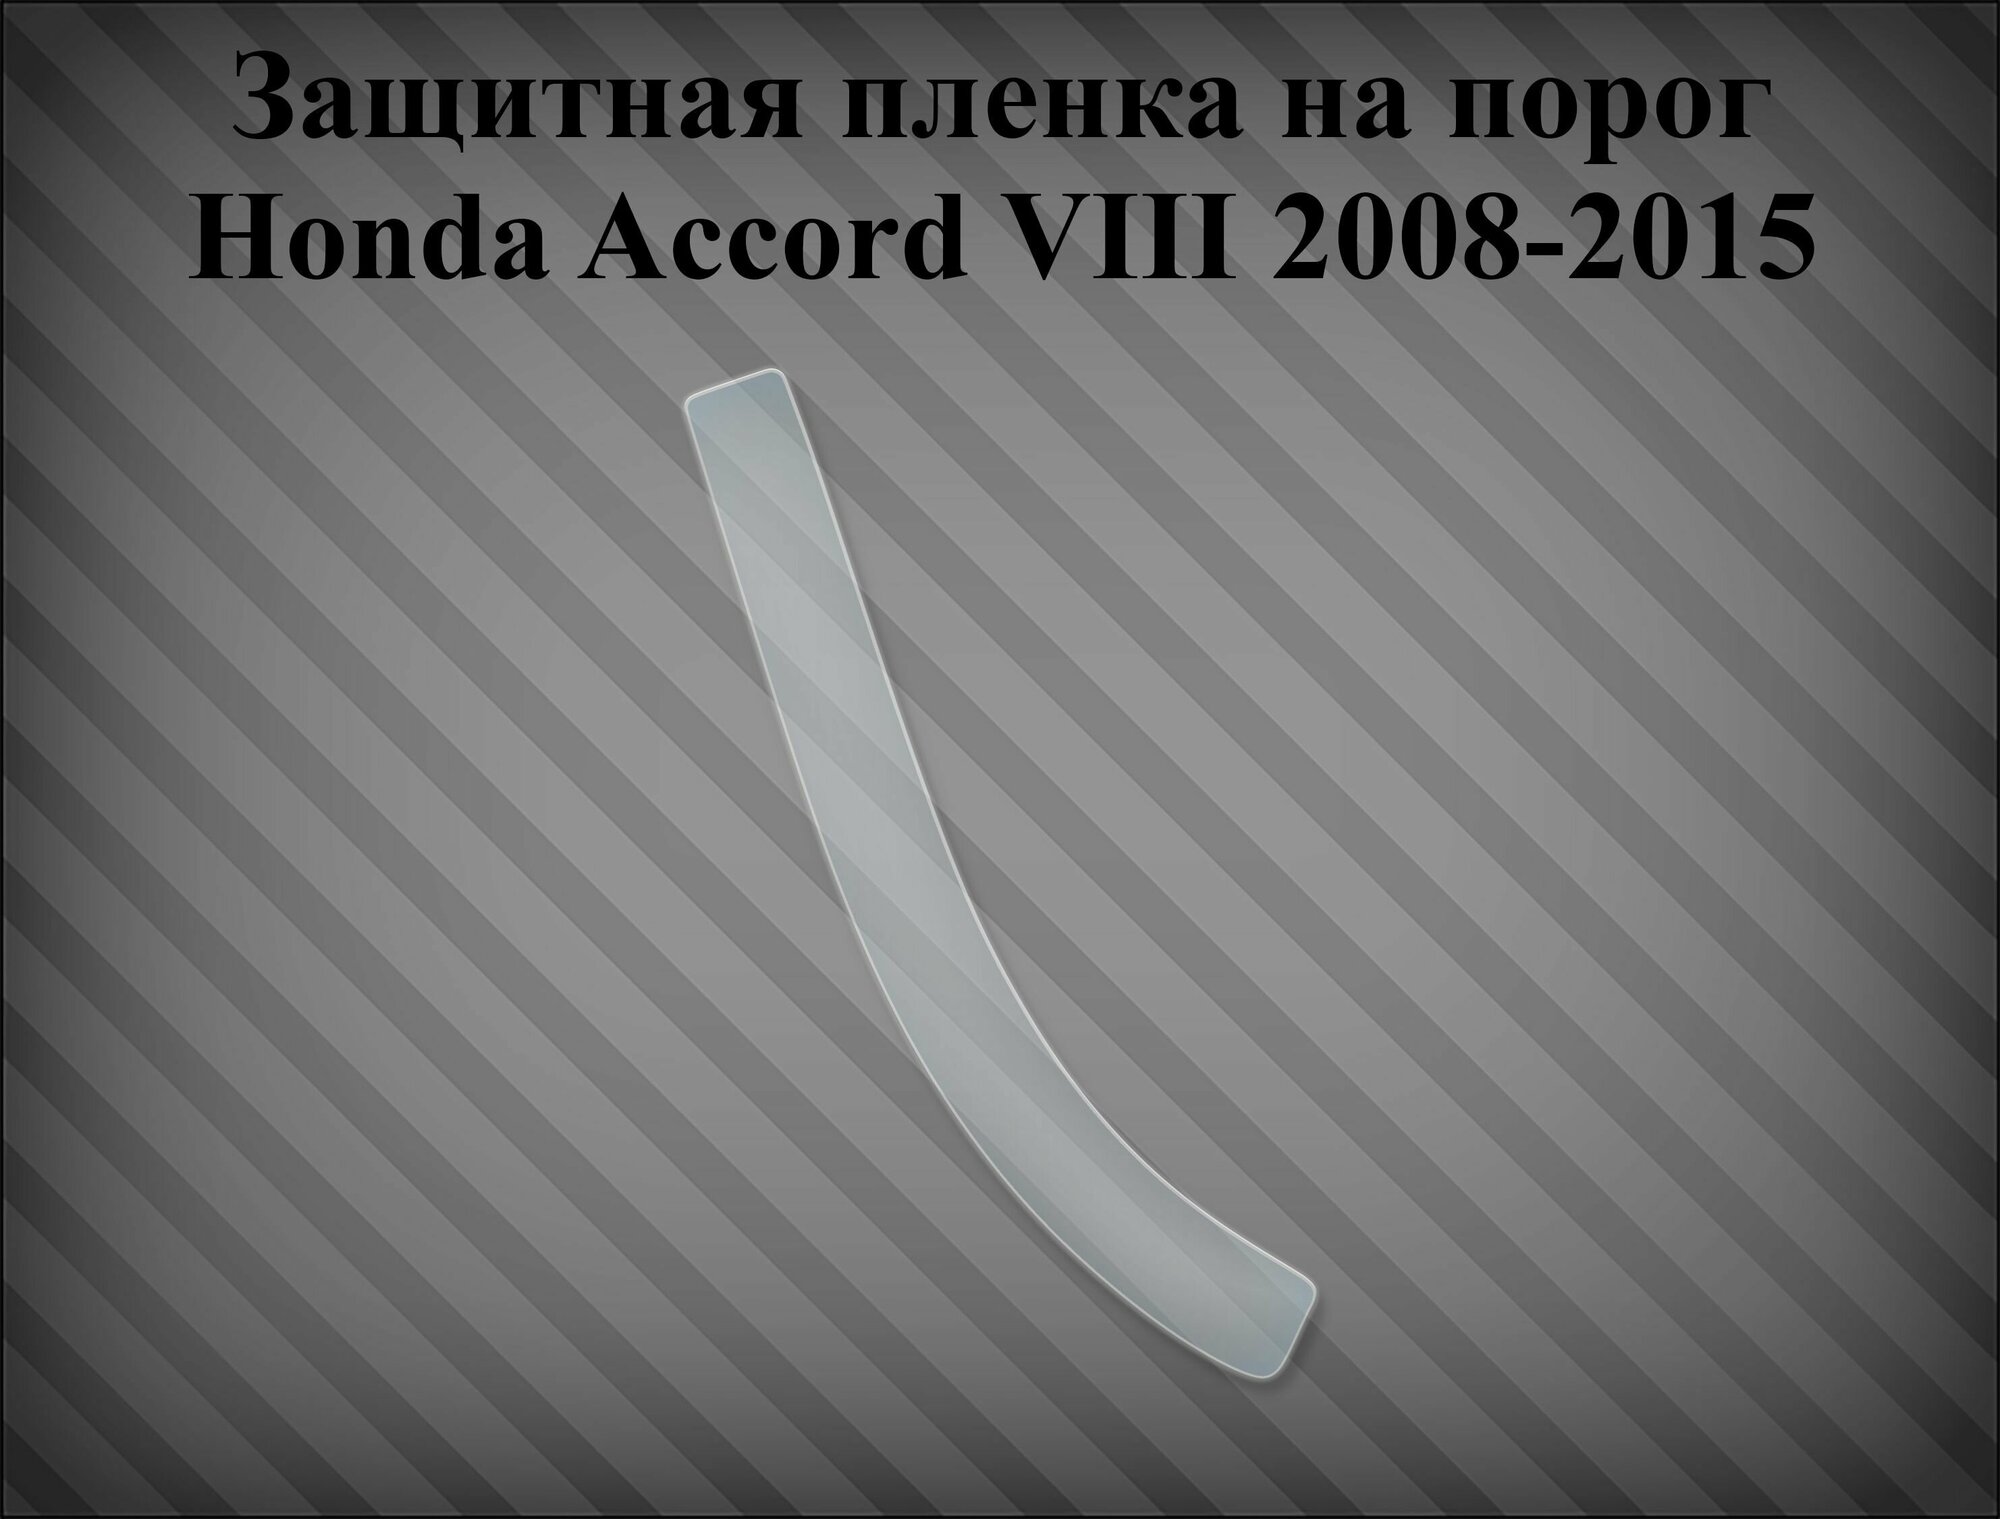 Защитная пленка на порог Honda Accord VIII 2008-2015 Правая